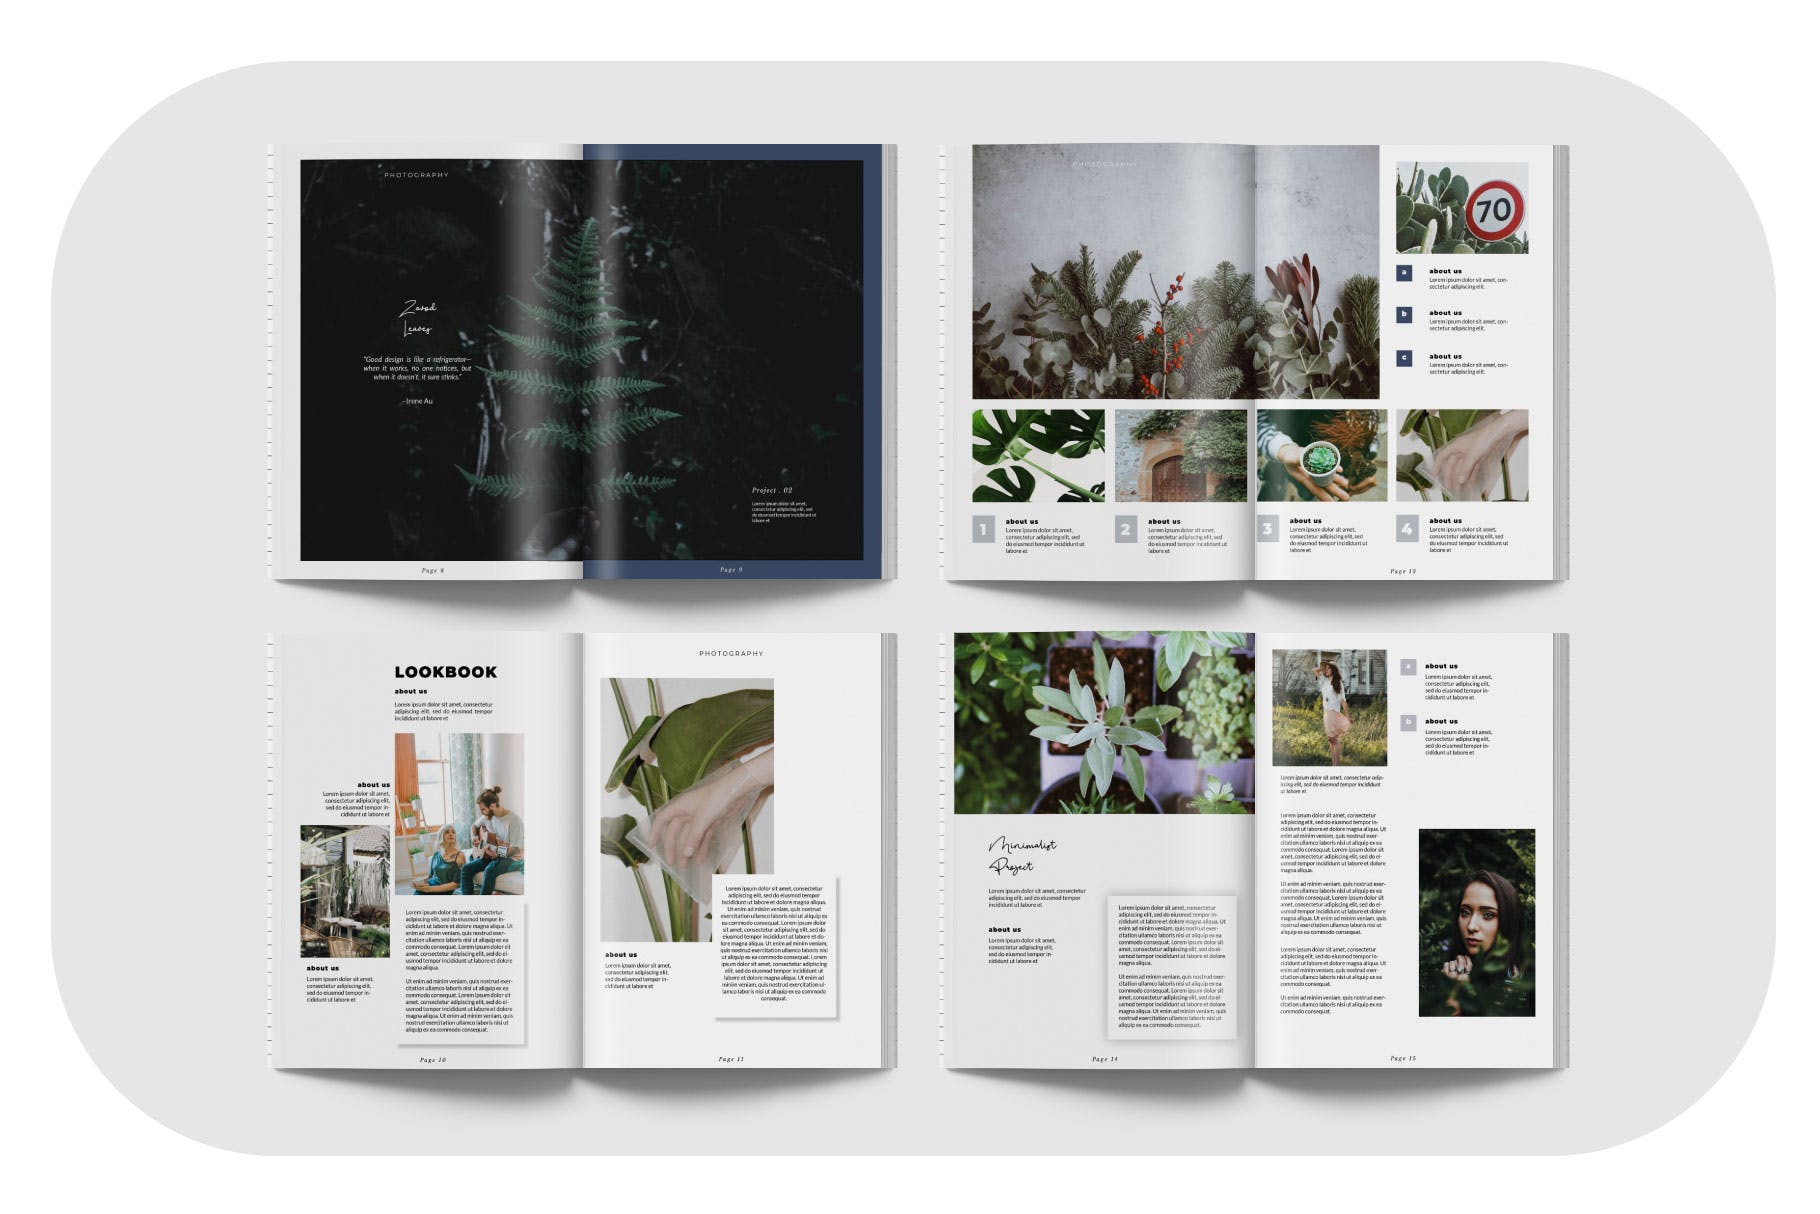 摄影/模特主题第一素材精选杂志排版设计模板 ZAVOD Business Magazine Minimal Template – LS插图(2)